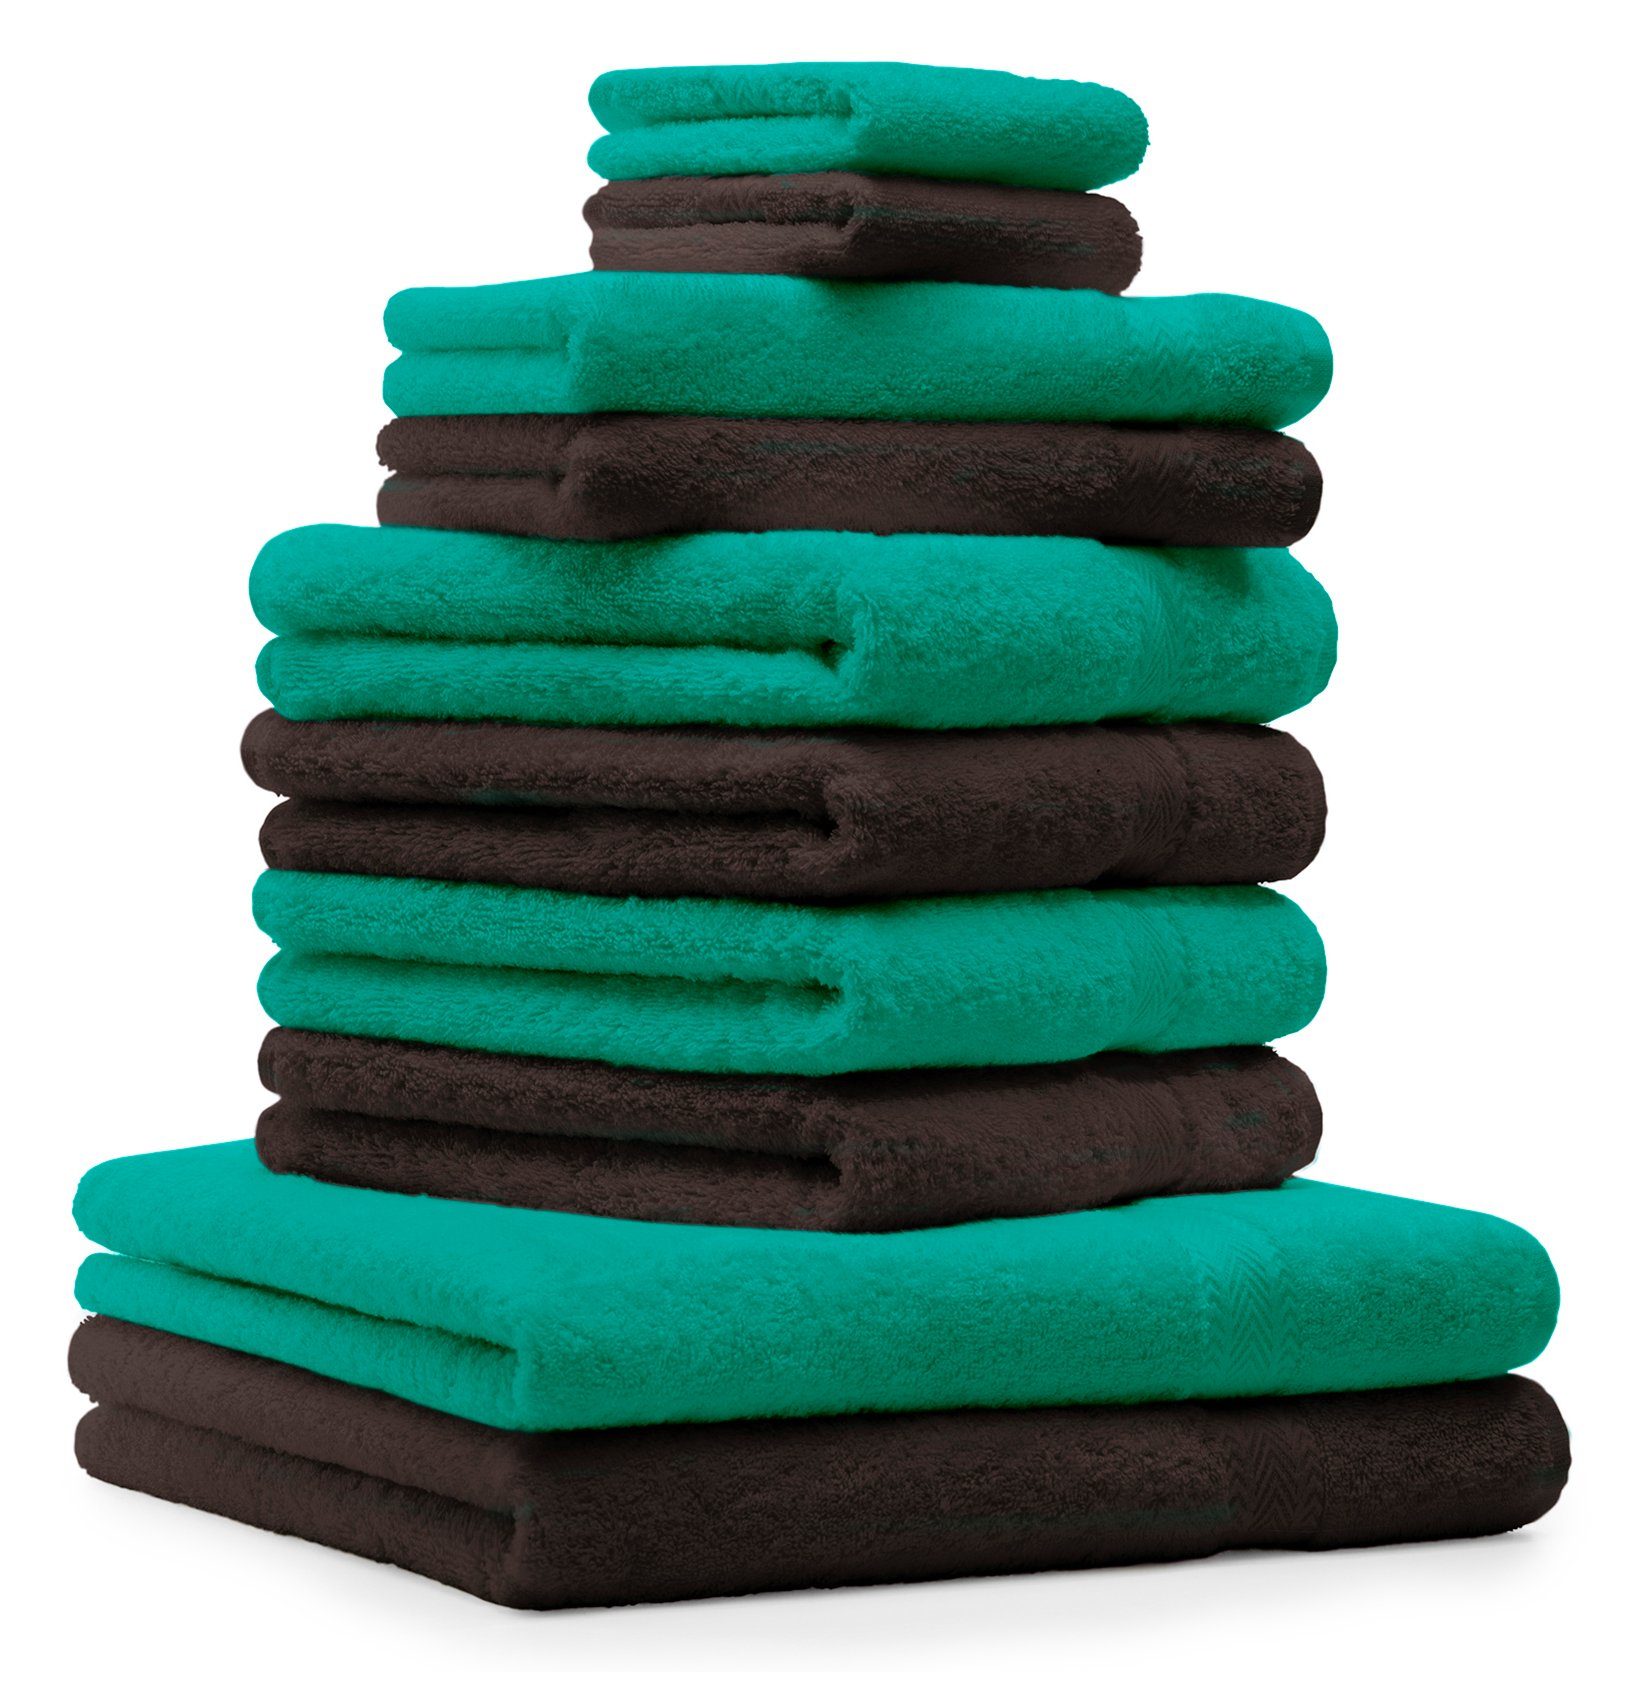 Betz Handtuch Set 10-TLG. Handtuch-Set Classic 100% Baumwolle smaragdgrün & dunkelbraun, 100% Baumwolle